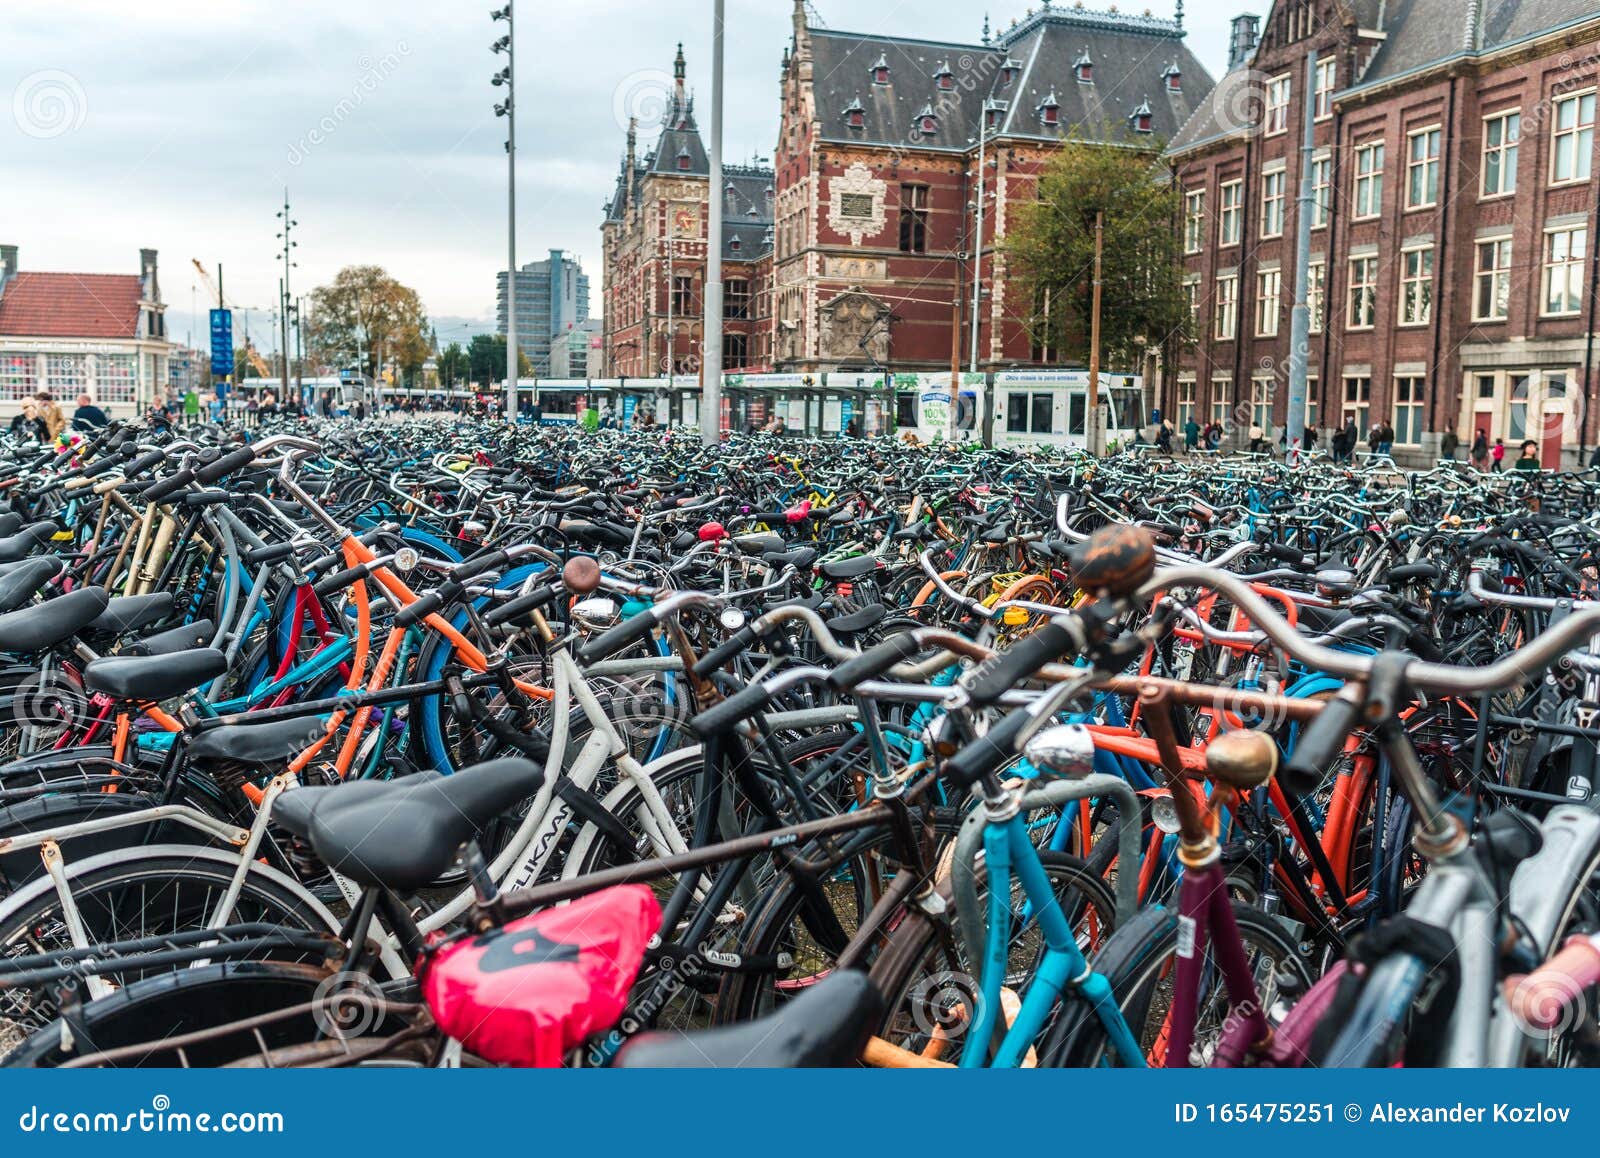 Veel Fietsen in Het Fietsenpark, Amsterdam Redactionele Foto of cyclus, holland: 165475251